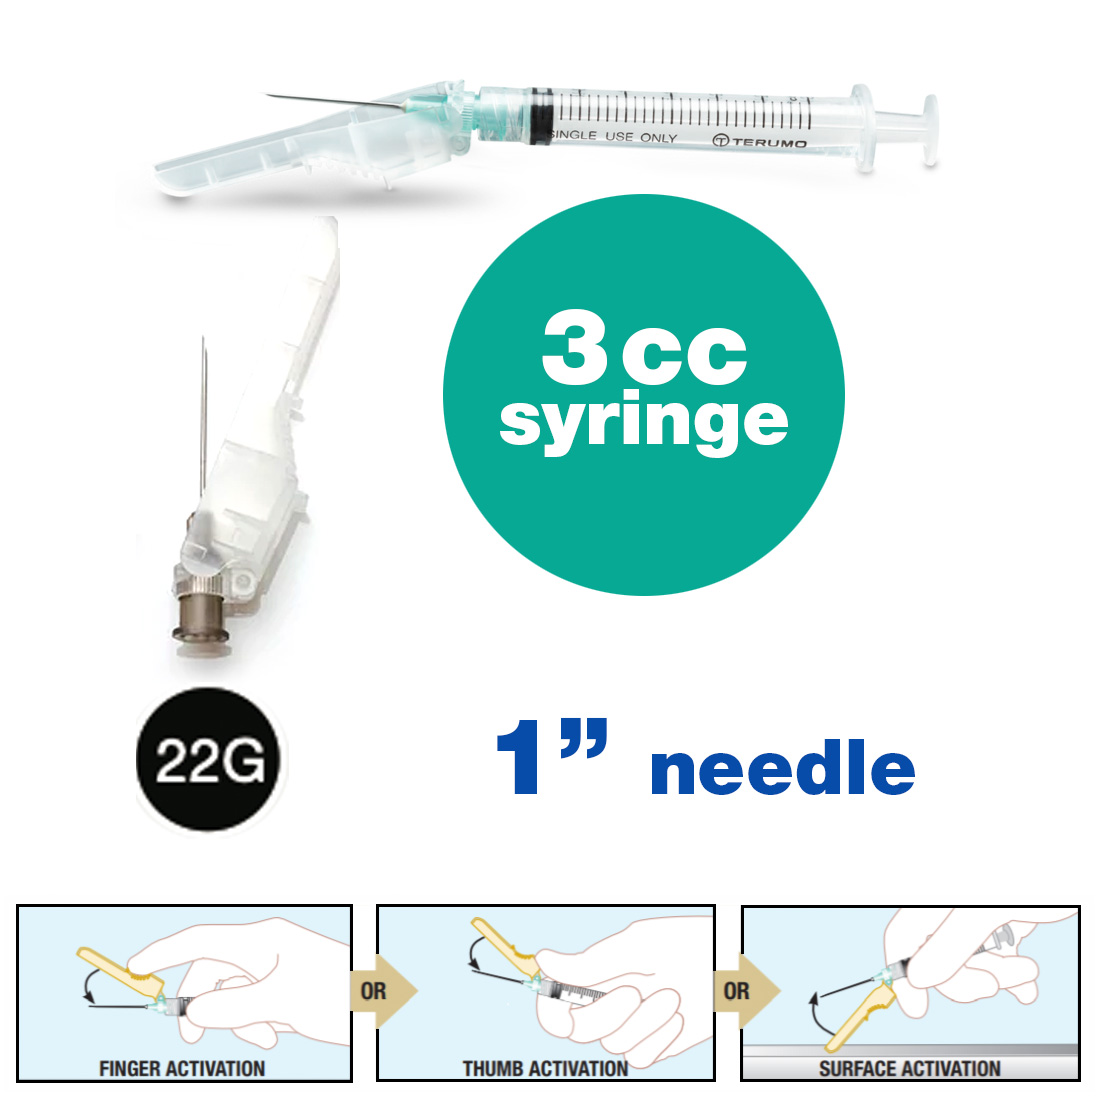 SurGuard® 3 Safety Hypodermic Needle, 3CC Syringe with 22G x 1" Needle - 100/Box